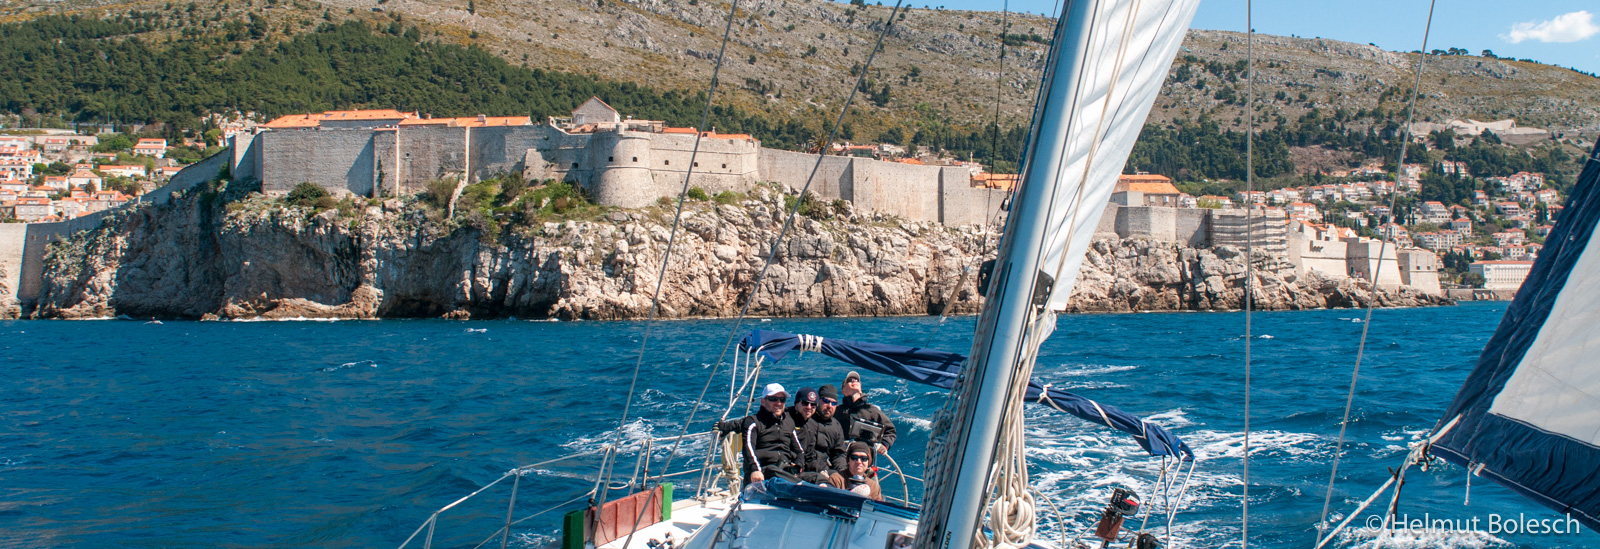 Segeln vor den Mauern von Dubrovnik - Foto © Helmut Bolesch